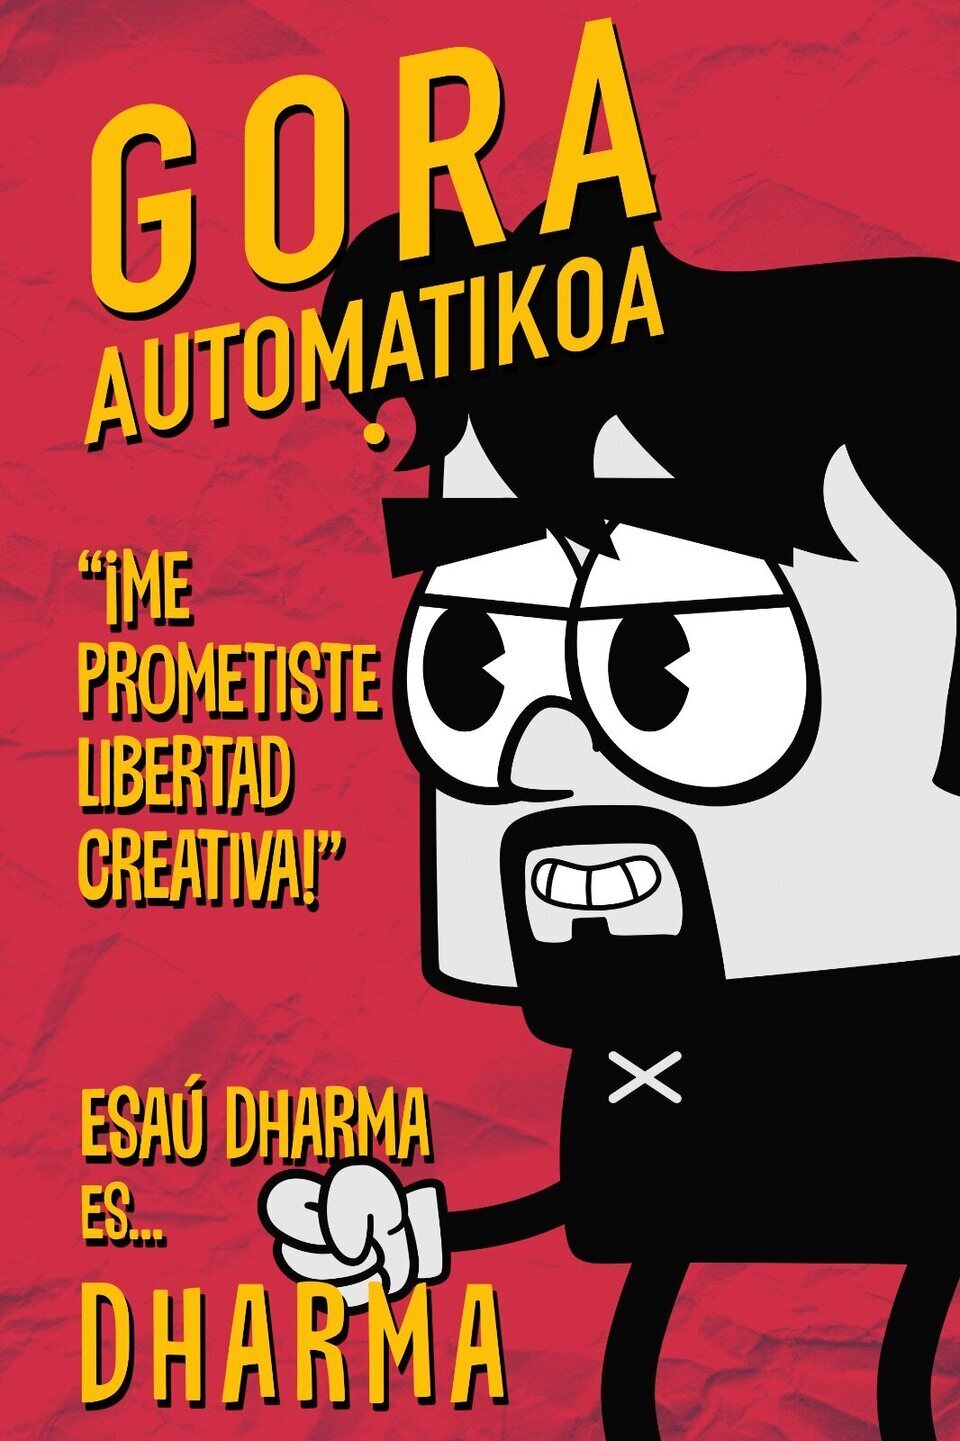 Poster of Gora Automatikoa - Esau